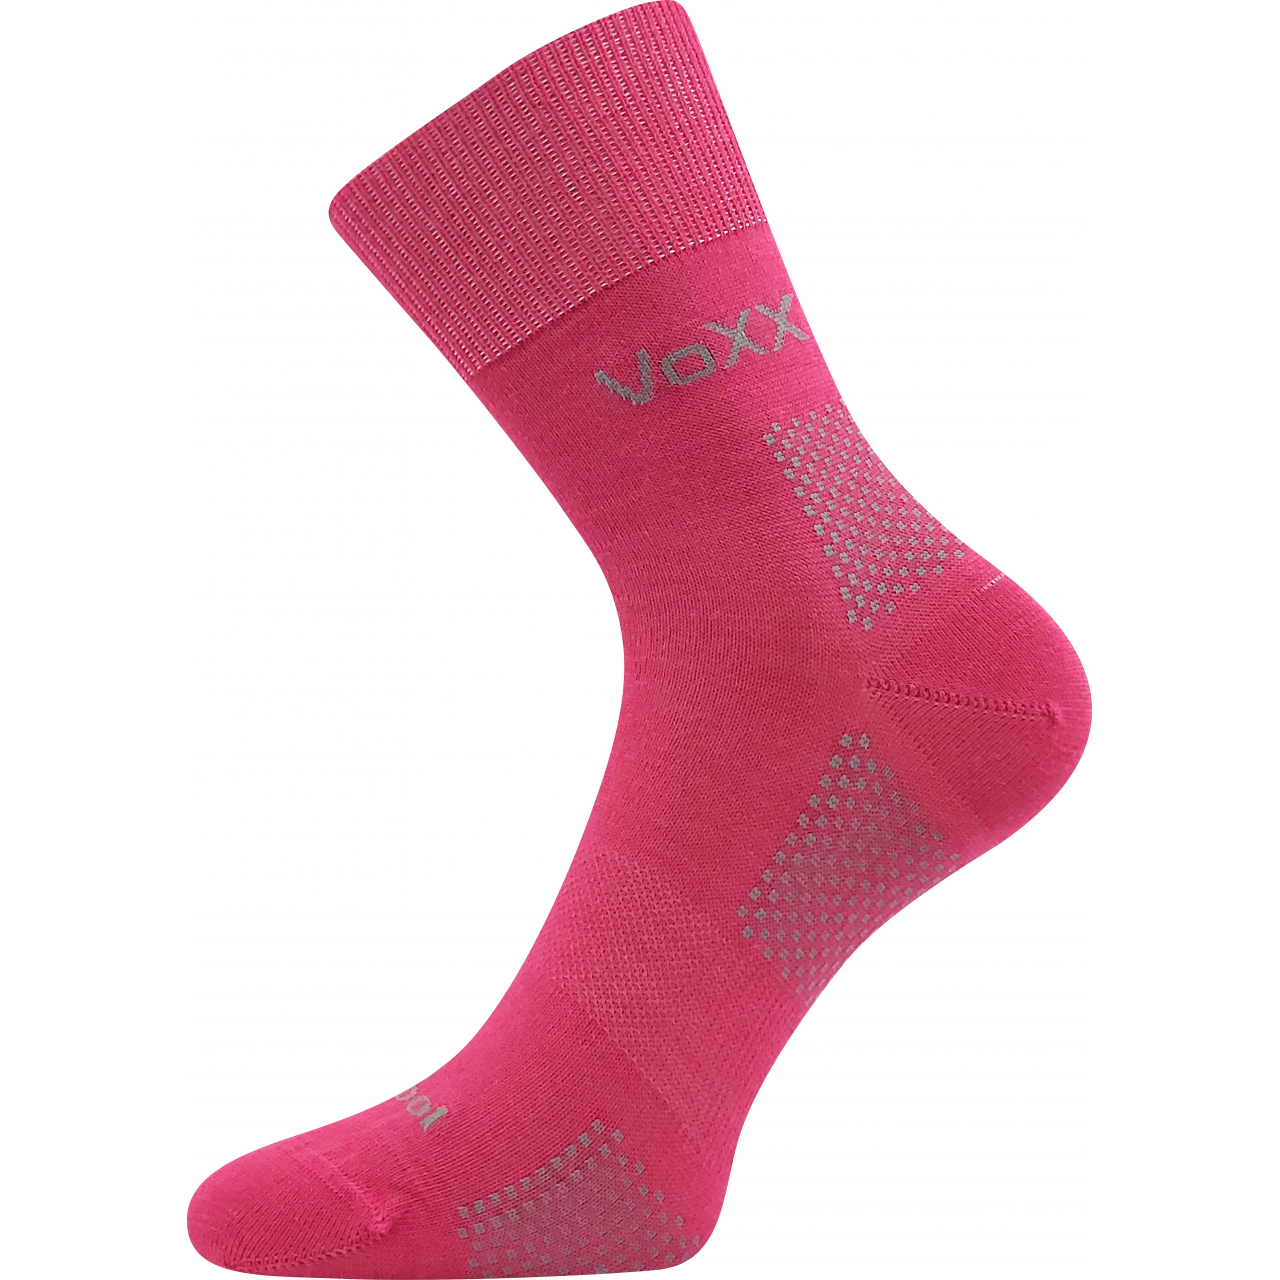 Ponožky unisex funkční VoXX Orionis ThermoCool - tmavě růžové, 39-42